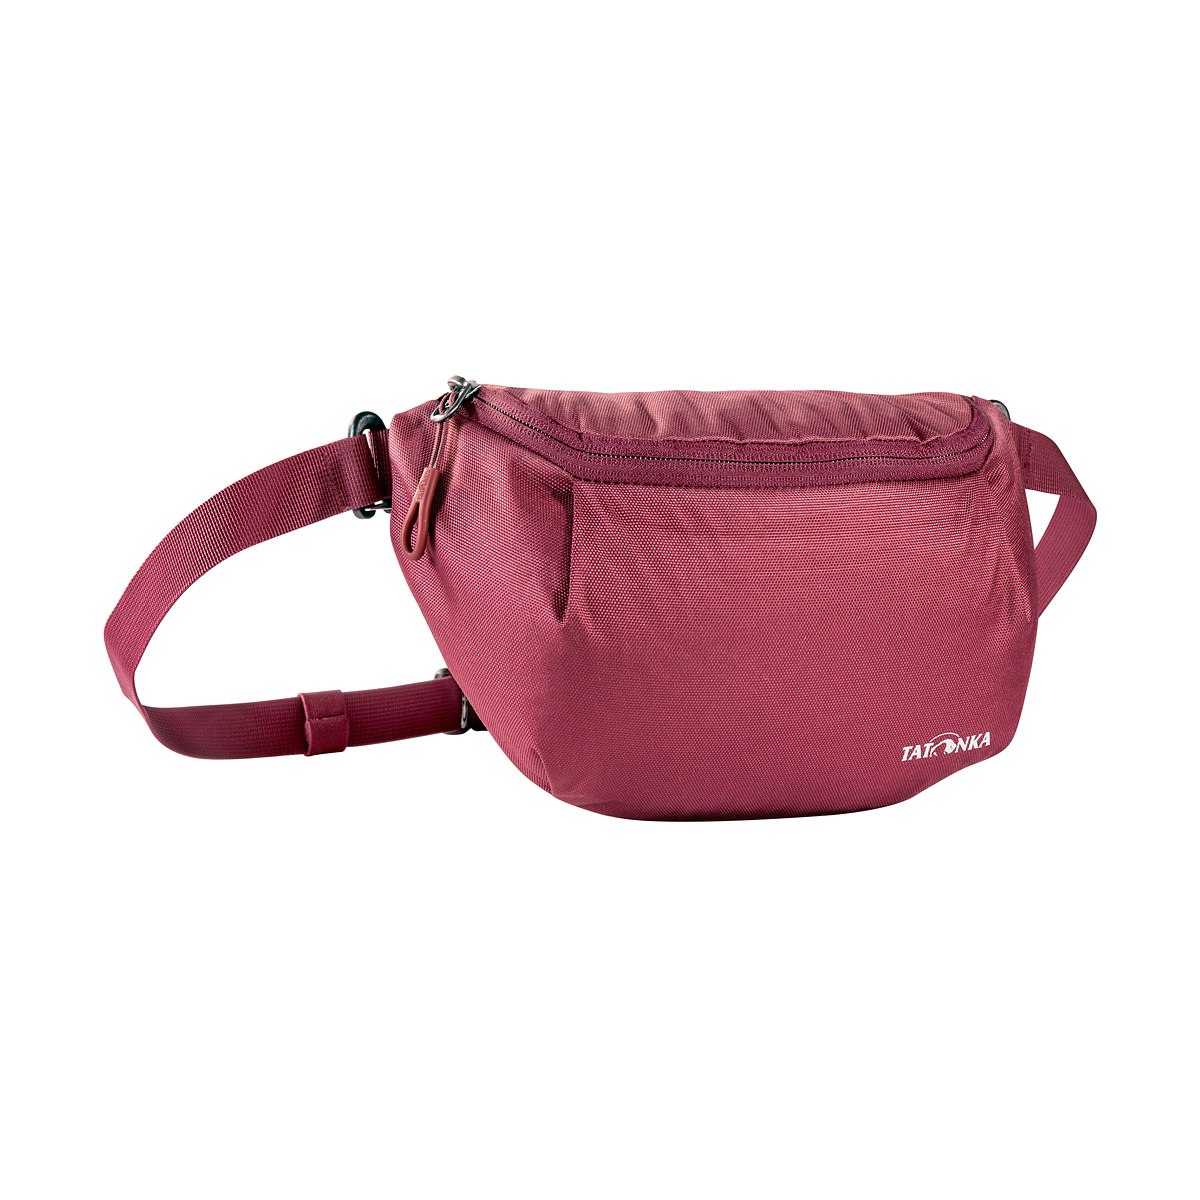 Produktbild von Tatonka Hip Belt Pouch - Hüfttasche - bordeaux red